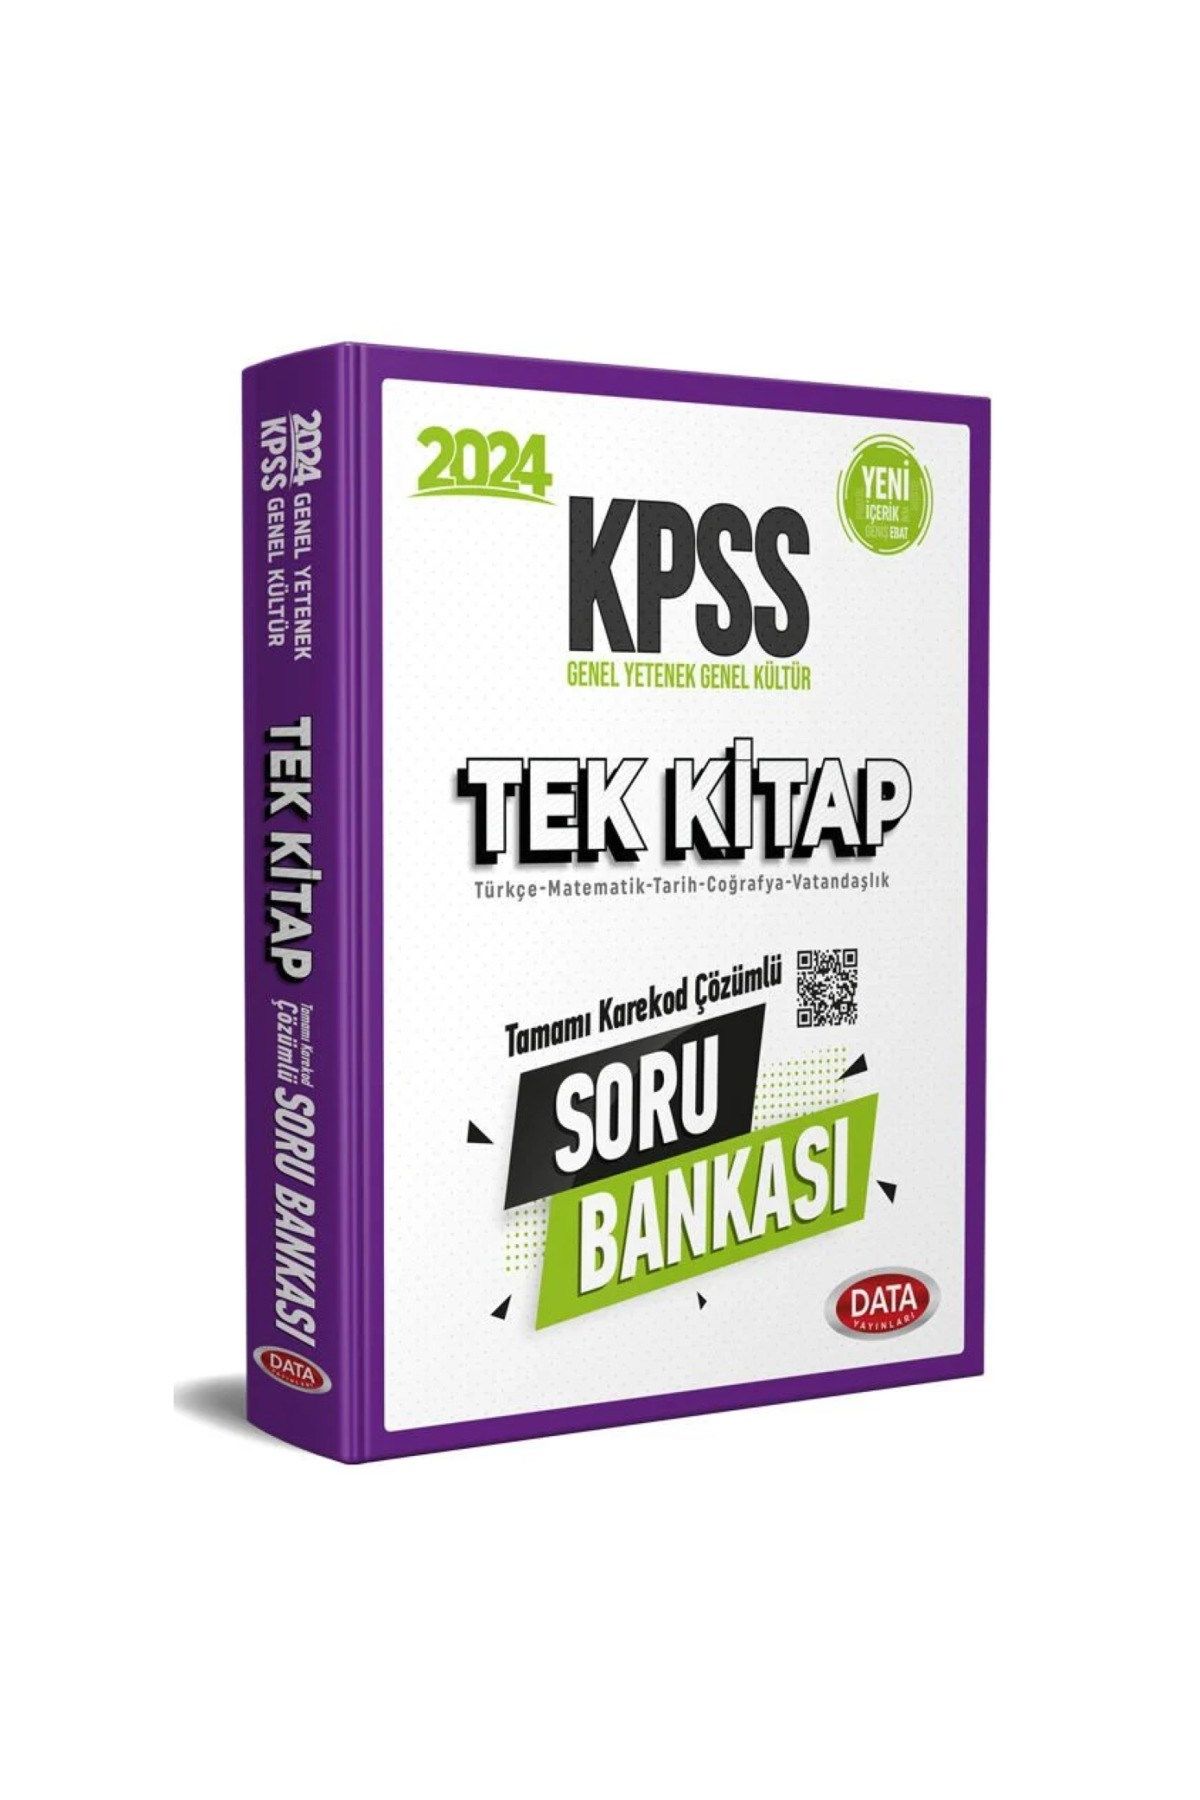 KPSS Tek Kitap Soru Bankası (Karekod Çözümlü)